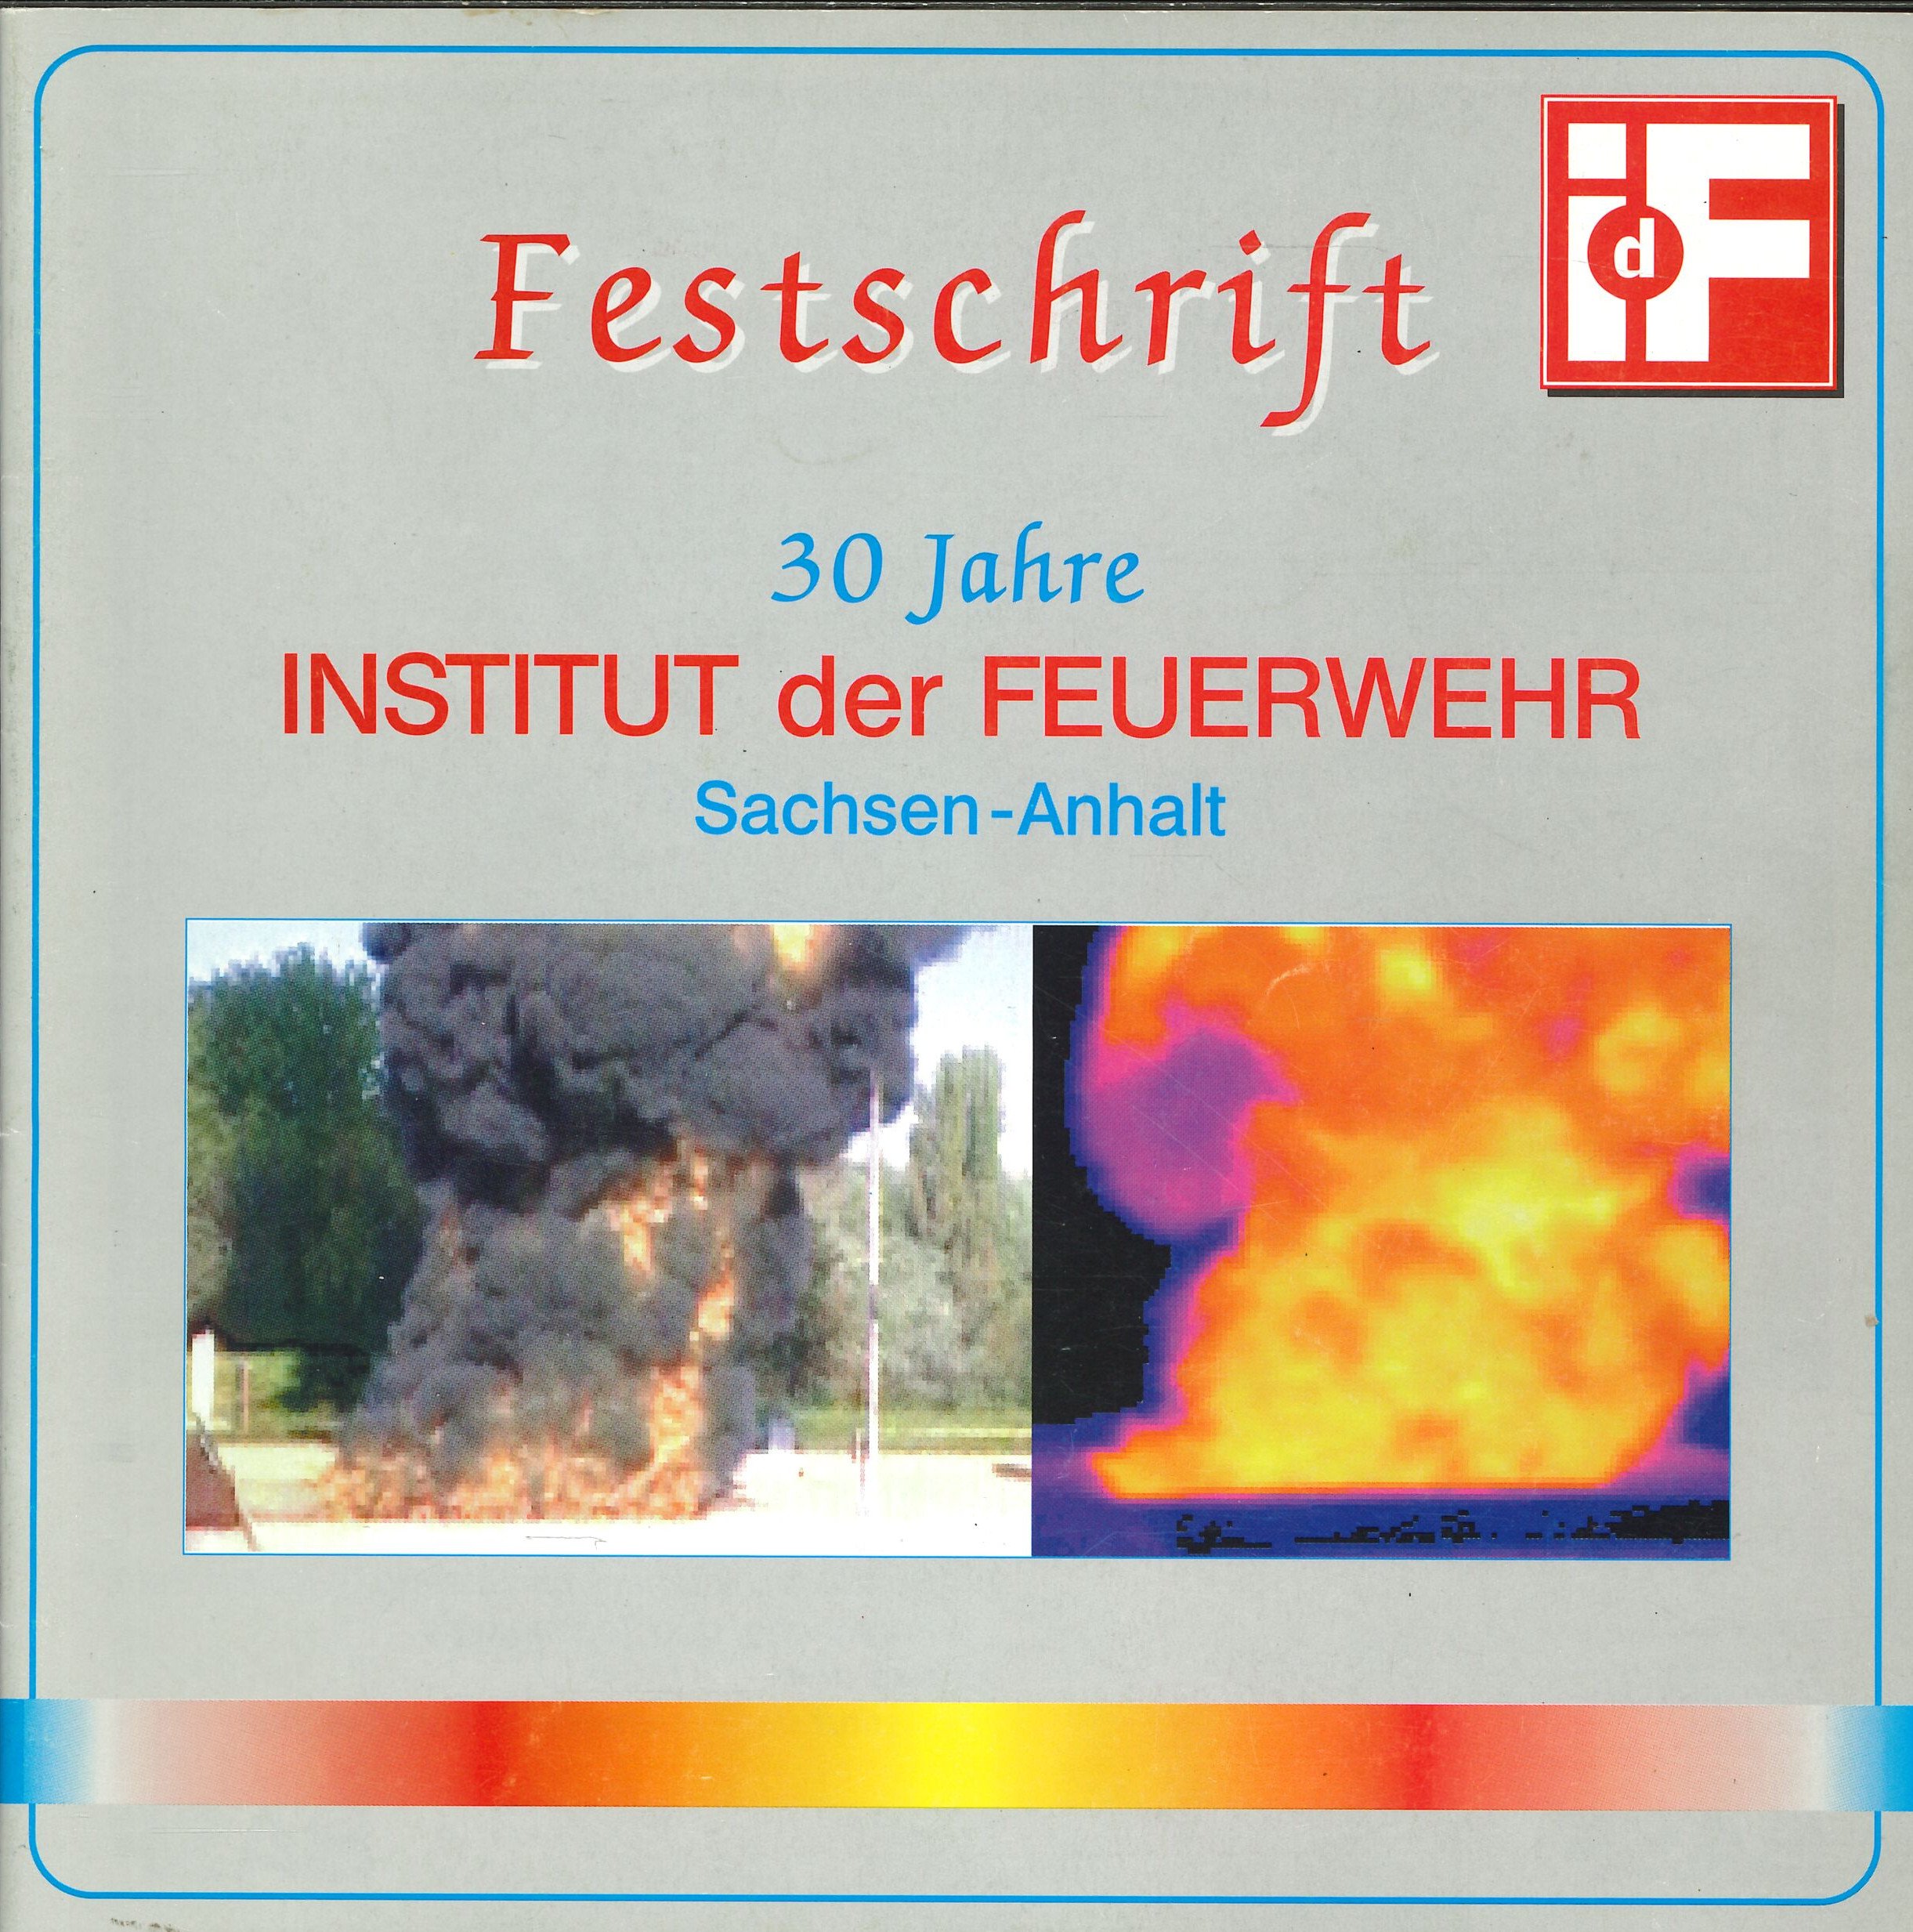 Festschrift Fw Sachsen-Anhalt (Feuerwehrmuseum Grethen CC BY-NC-SA)